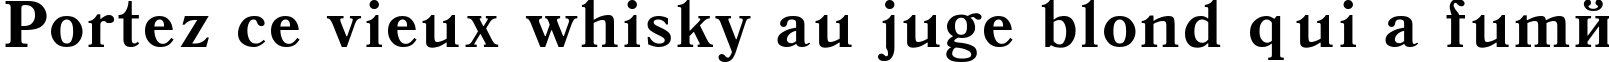 Пример написания шрифтом Antiqua-Bold текста на французском